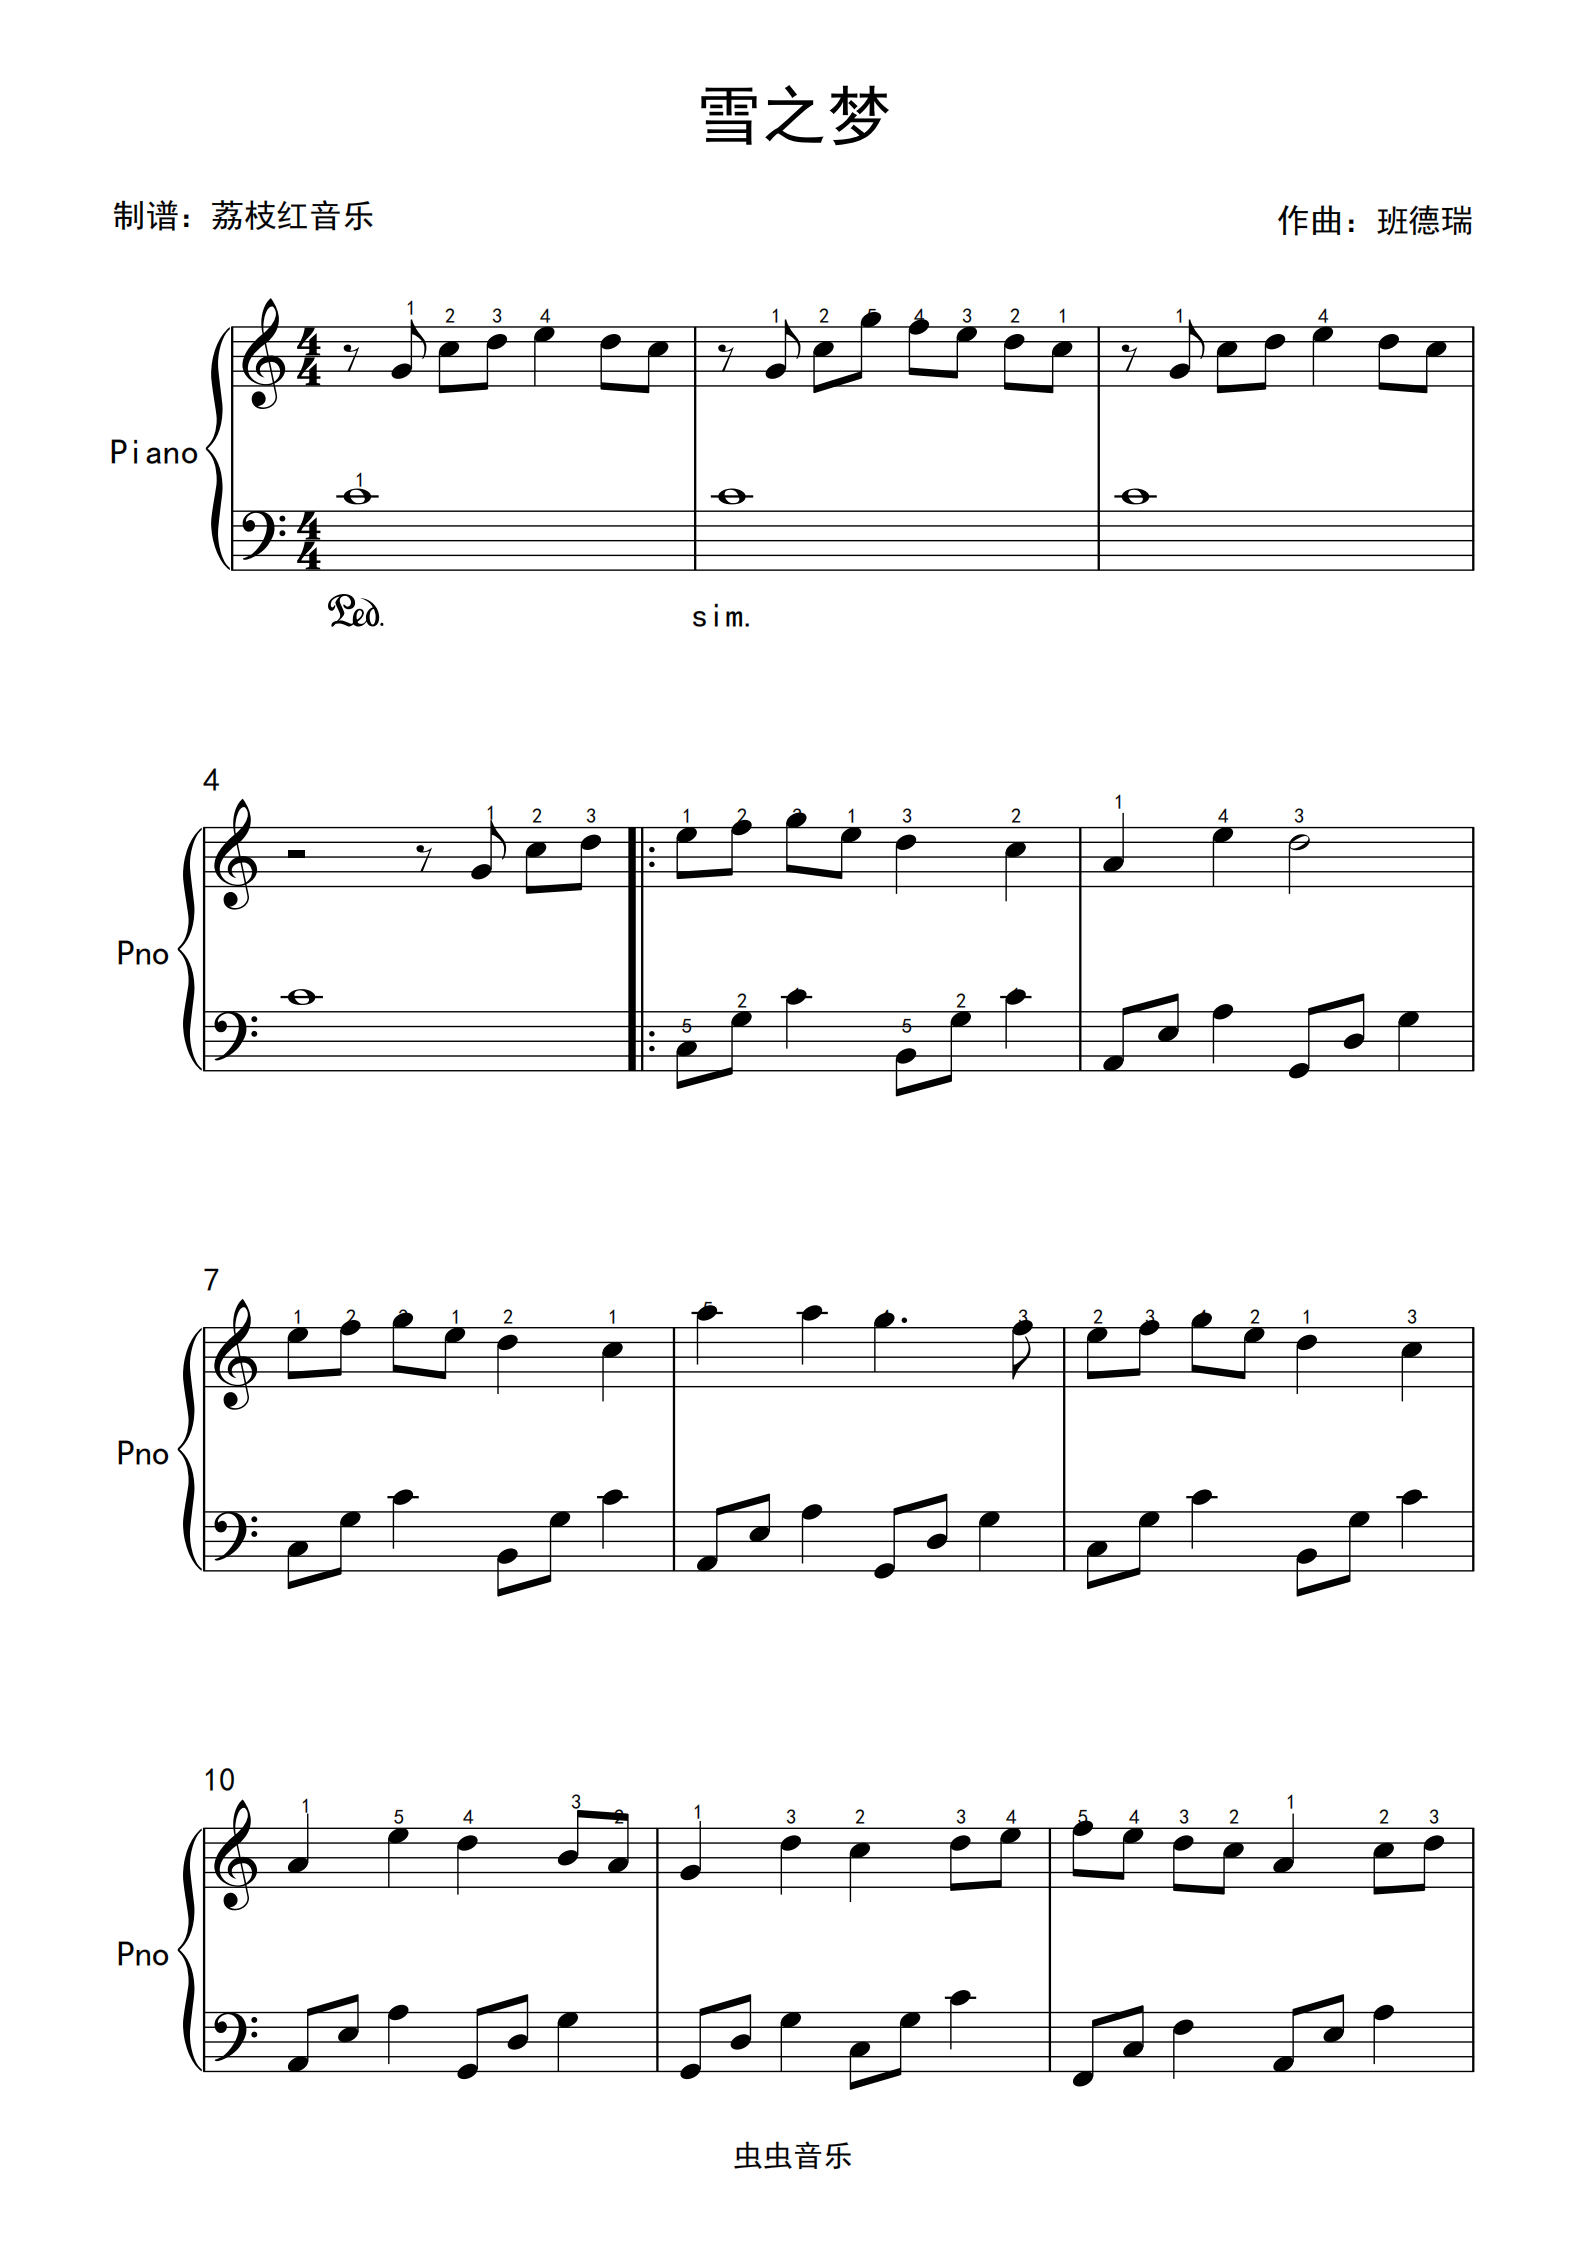 完整版 c大调带指法 班德瑞 雪之梦 独奏高清钢琴谱 送示范